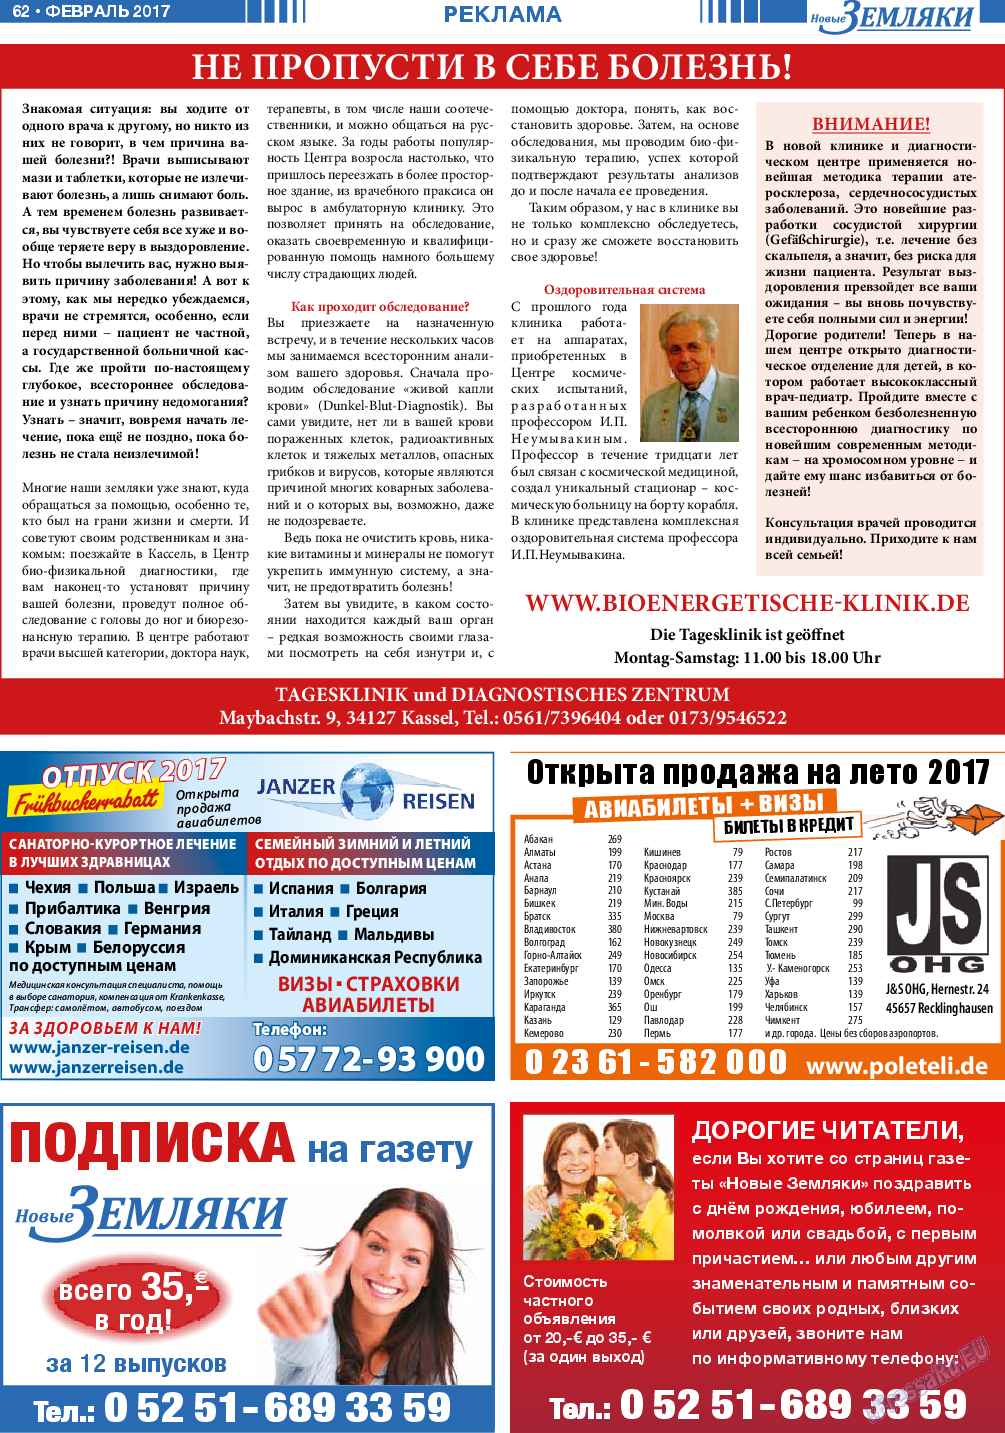 Новые Земляки, газета. 2017 №2 стр.62